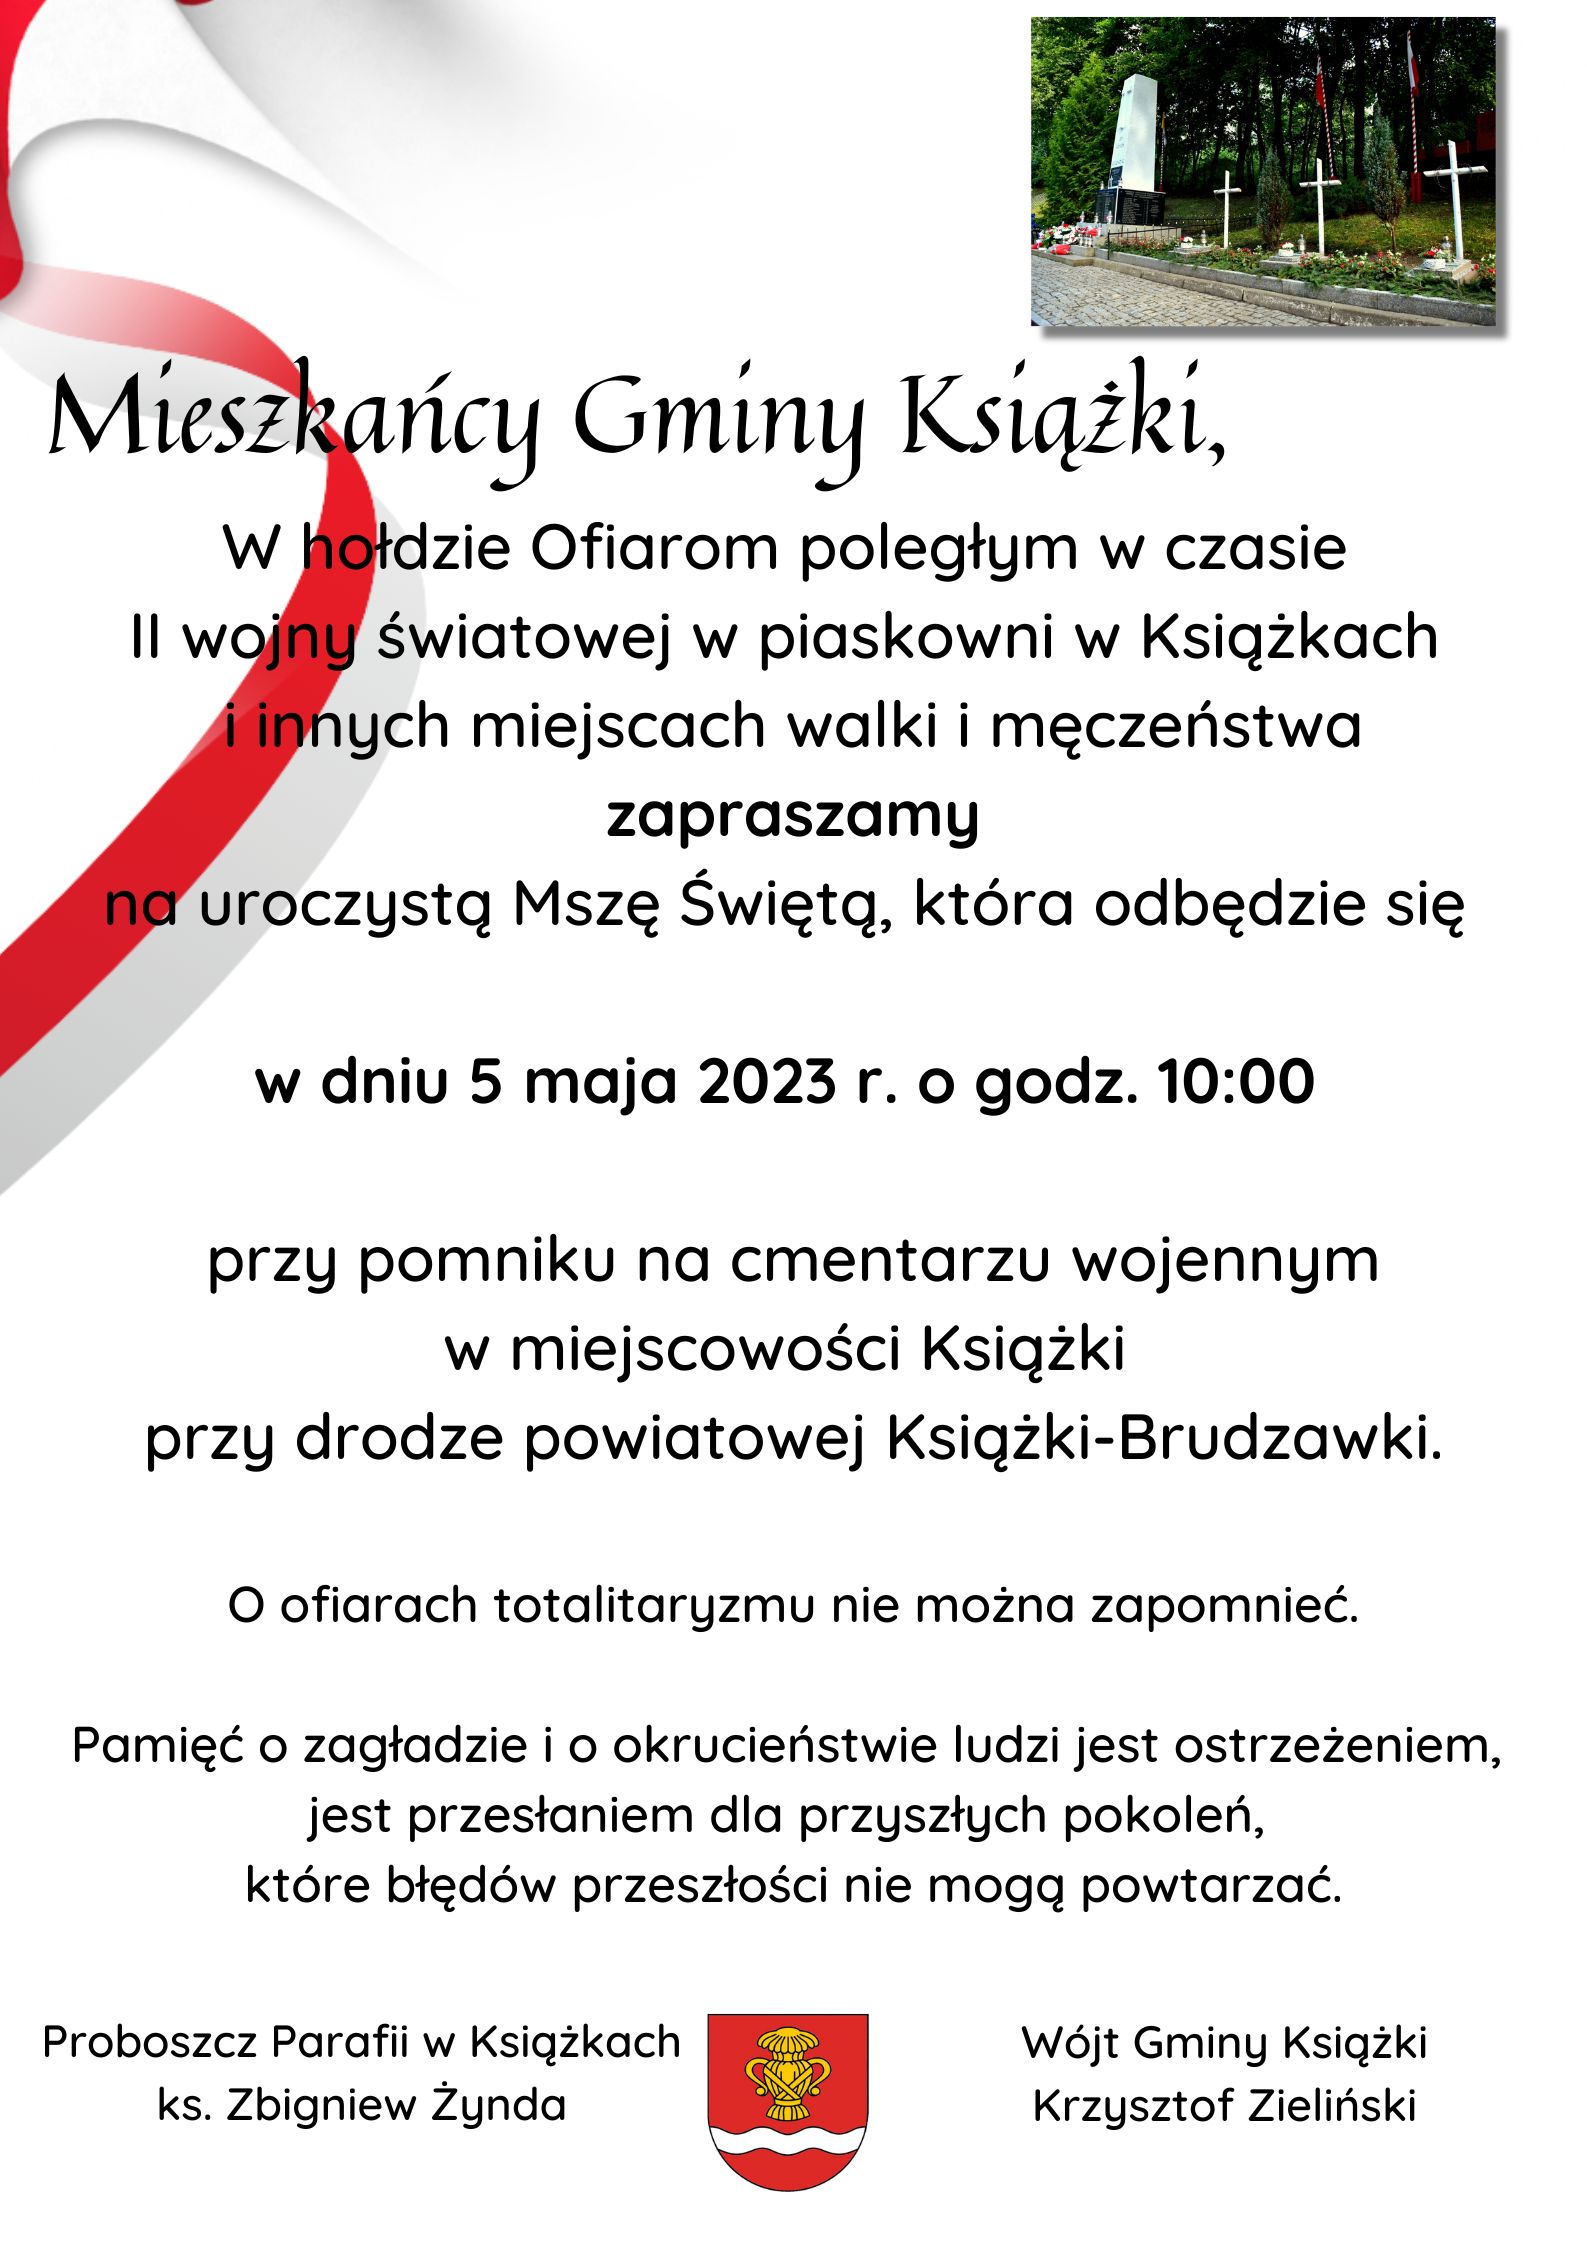 Plakat informujący o mszy świętej, która odbędzie się 5 maja 2023 r. o godz. 10:00 przy pomniku na cmentarzu wojennym w Książkach